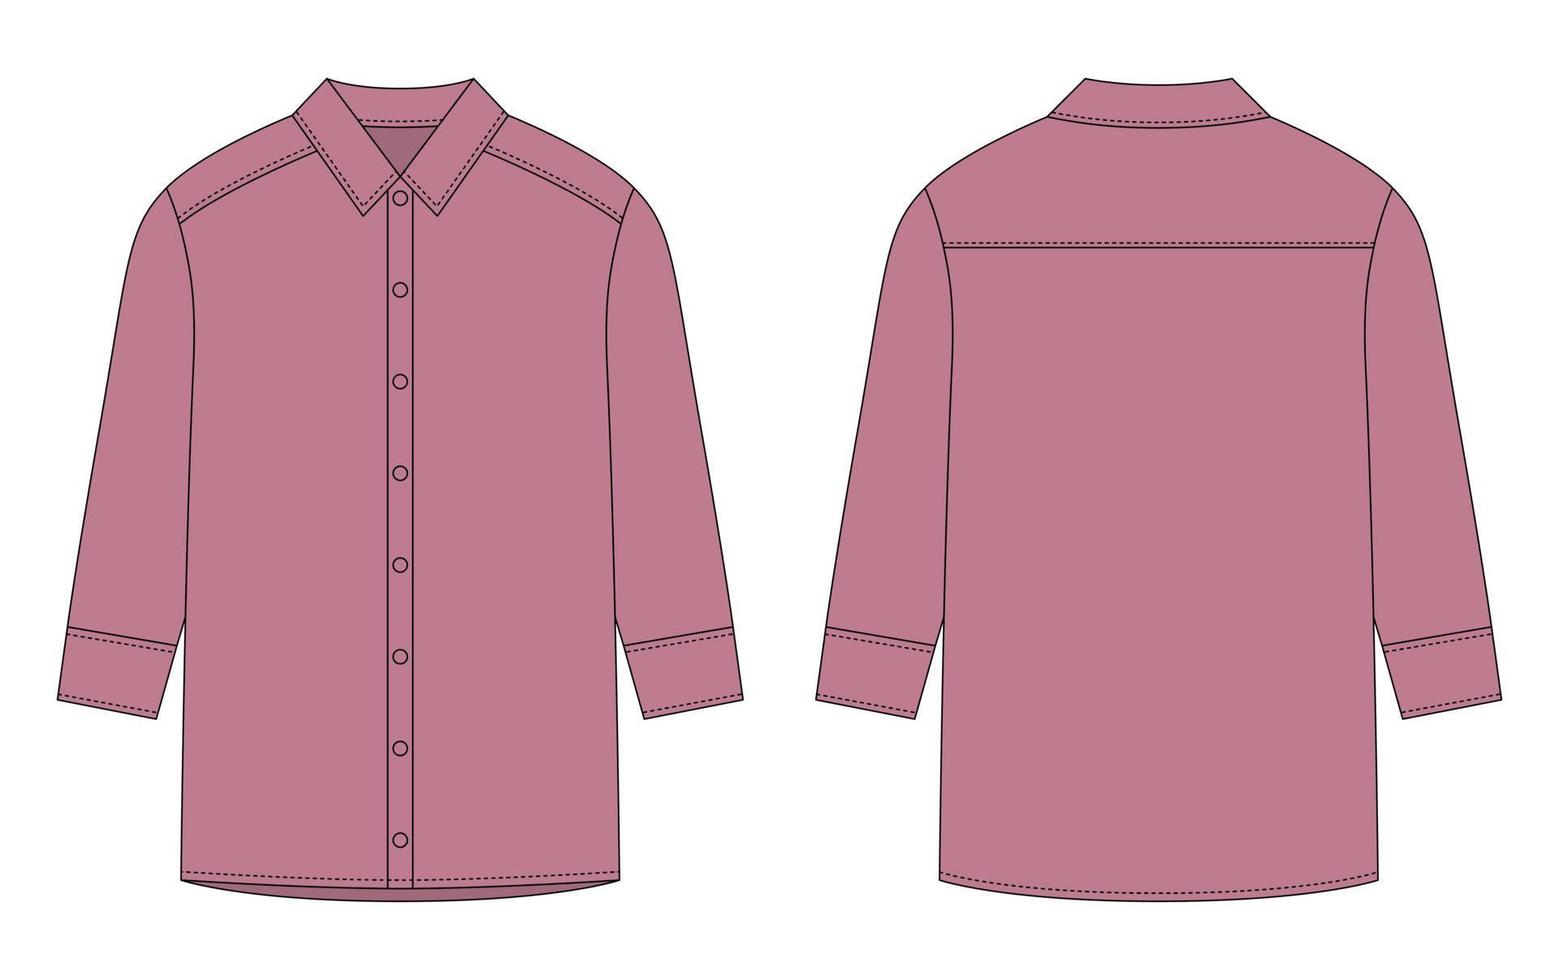 camisa oversized com mangas compridas e desenho técnico de botões. pudracolor. vetor